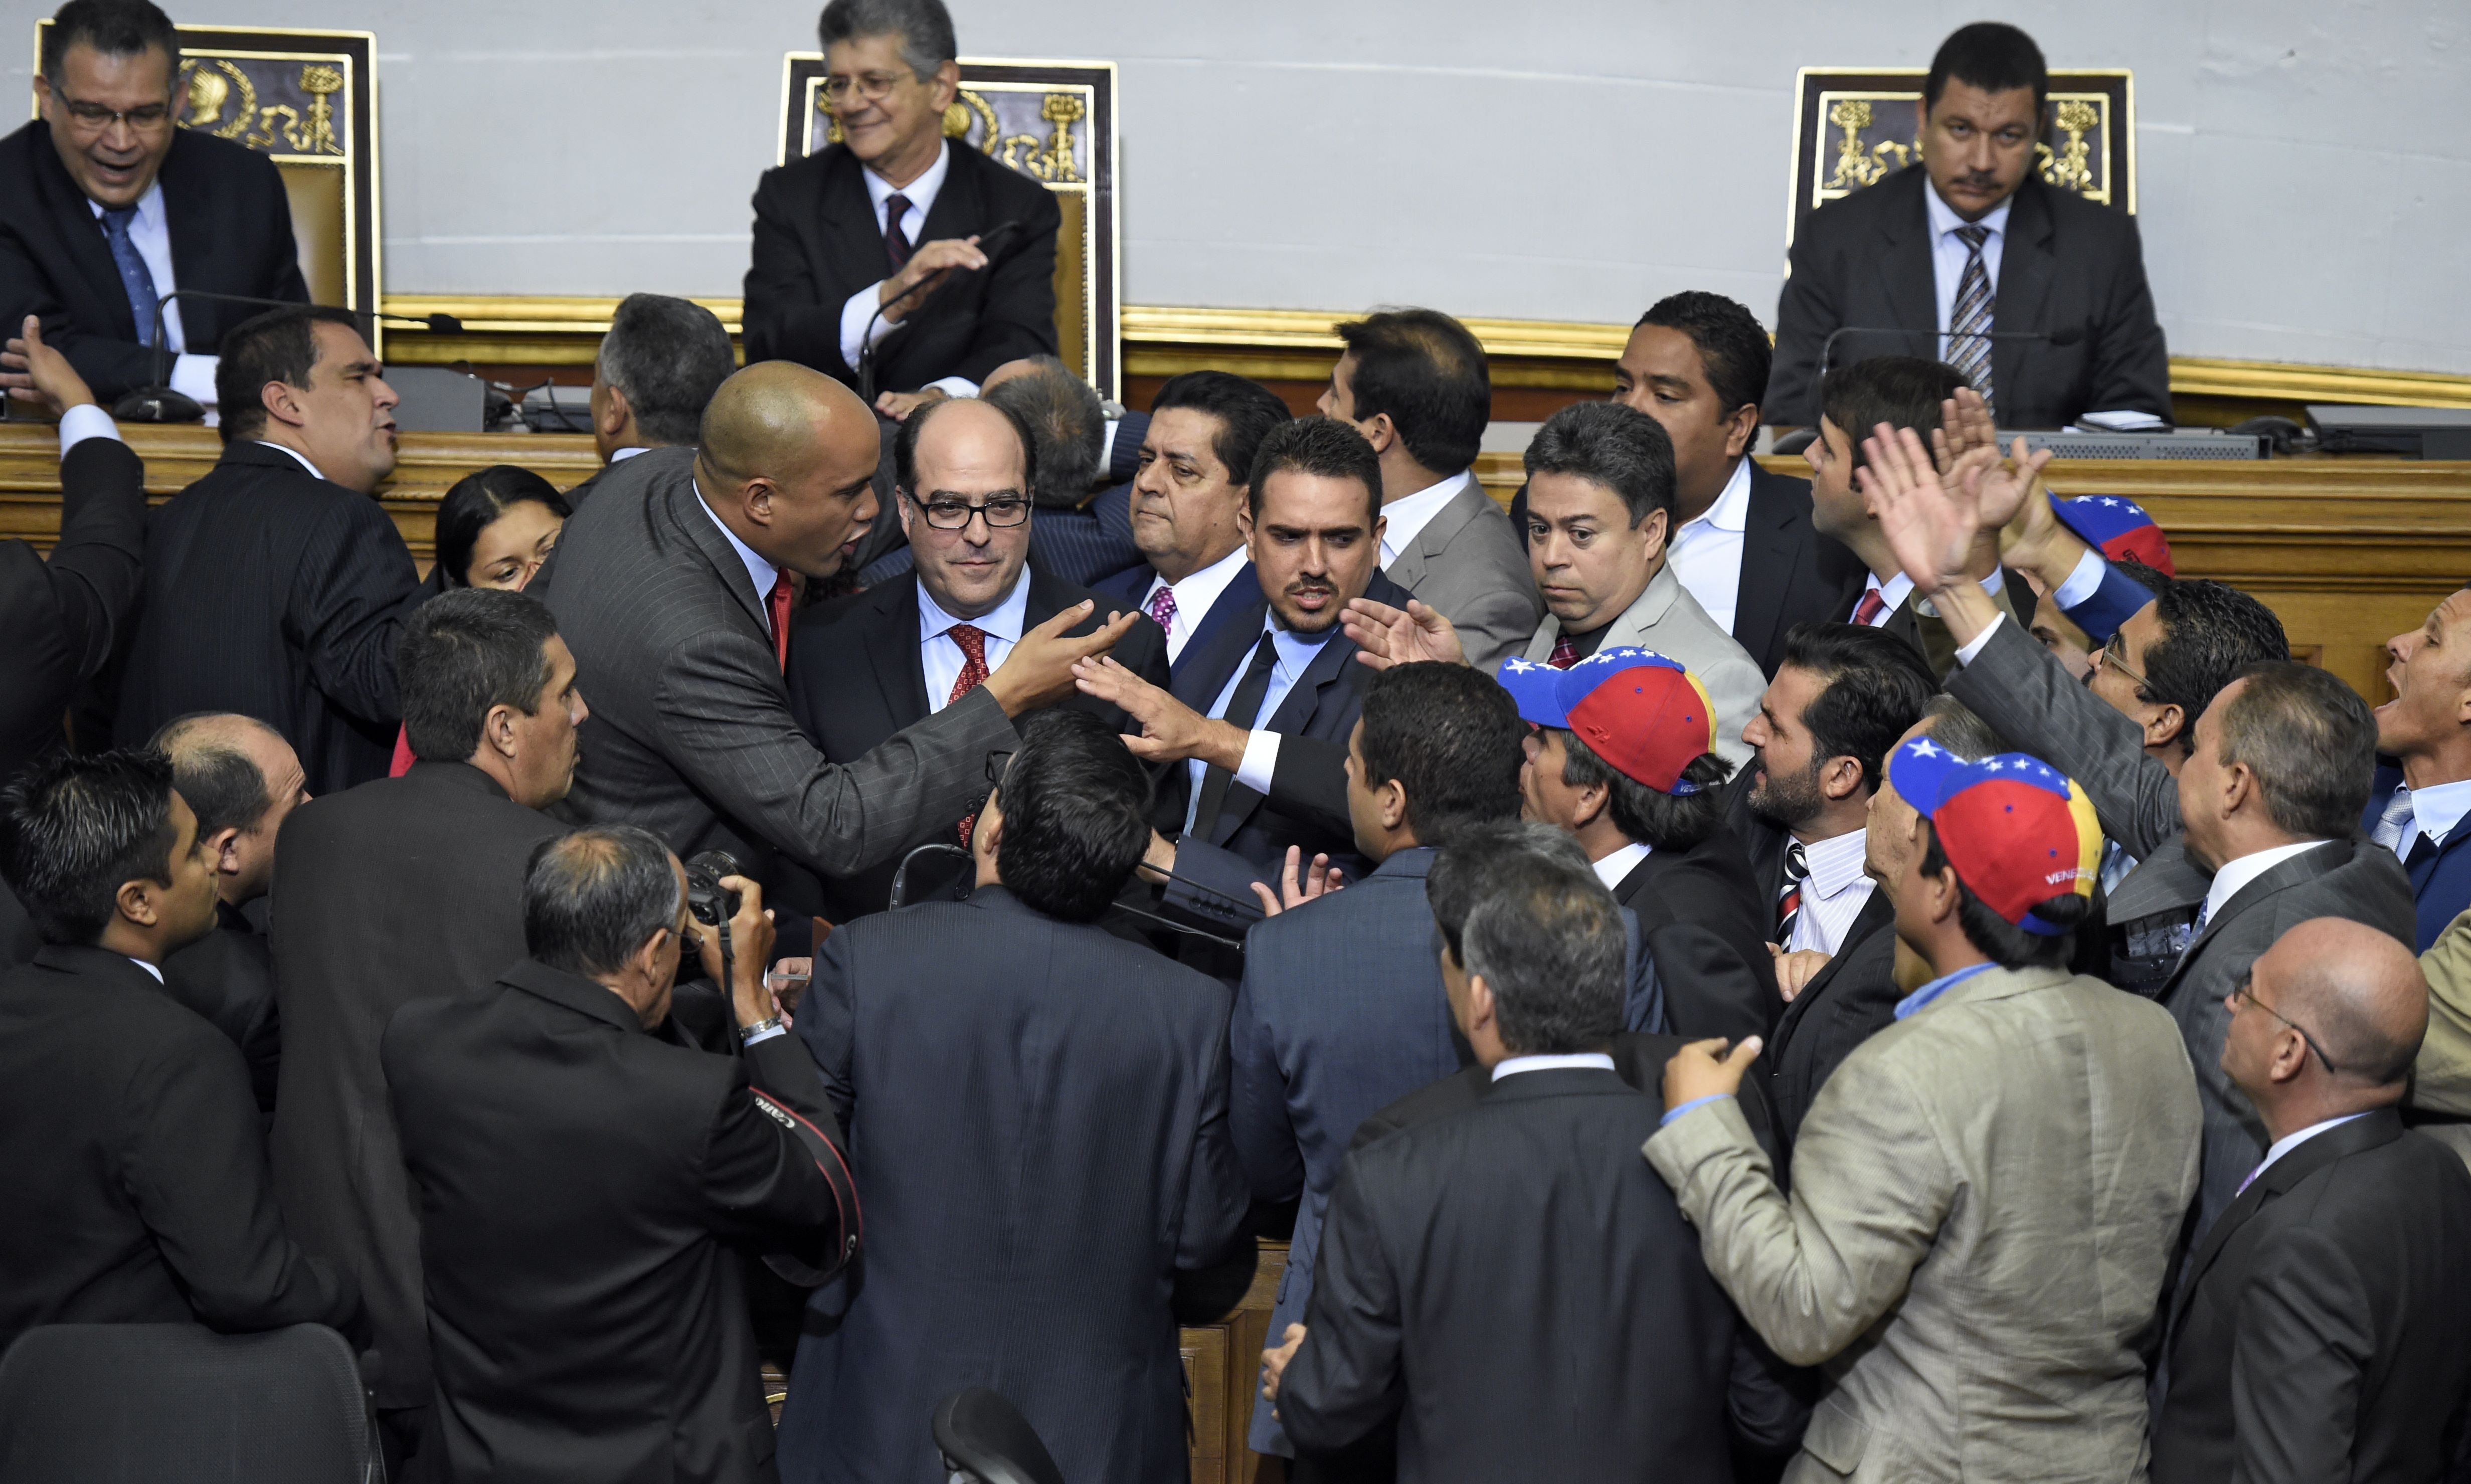 Diputados oficialistas venezolanos salen en defender de Maduro ante la oposición